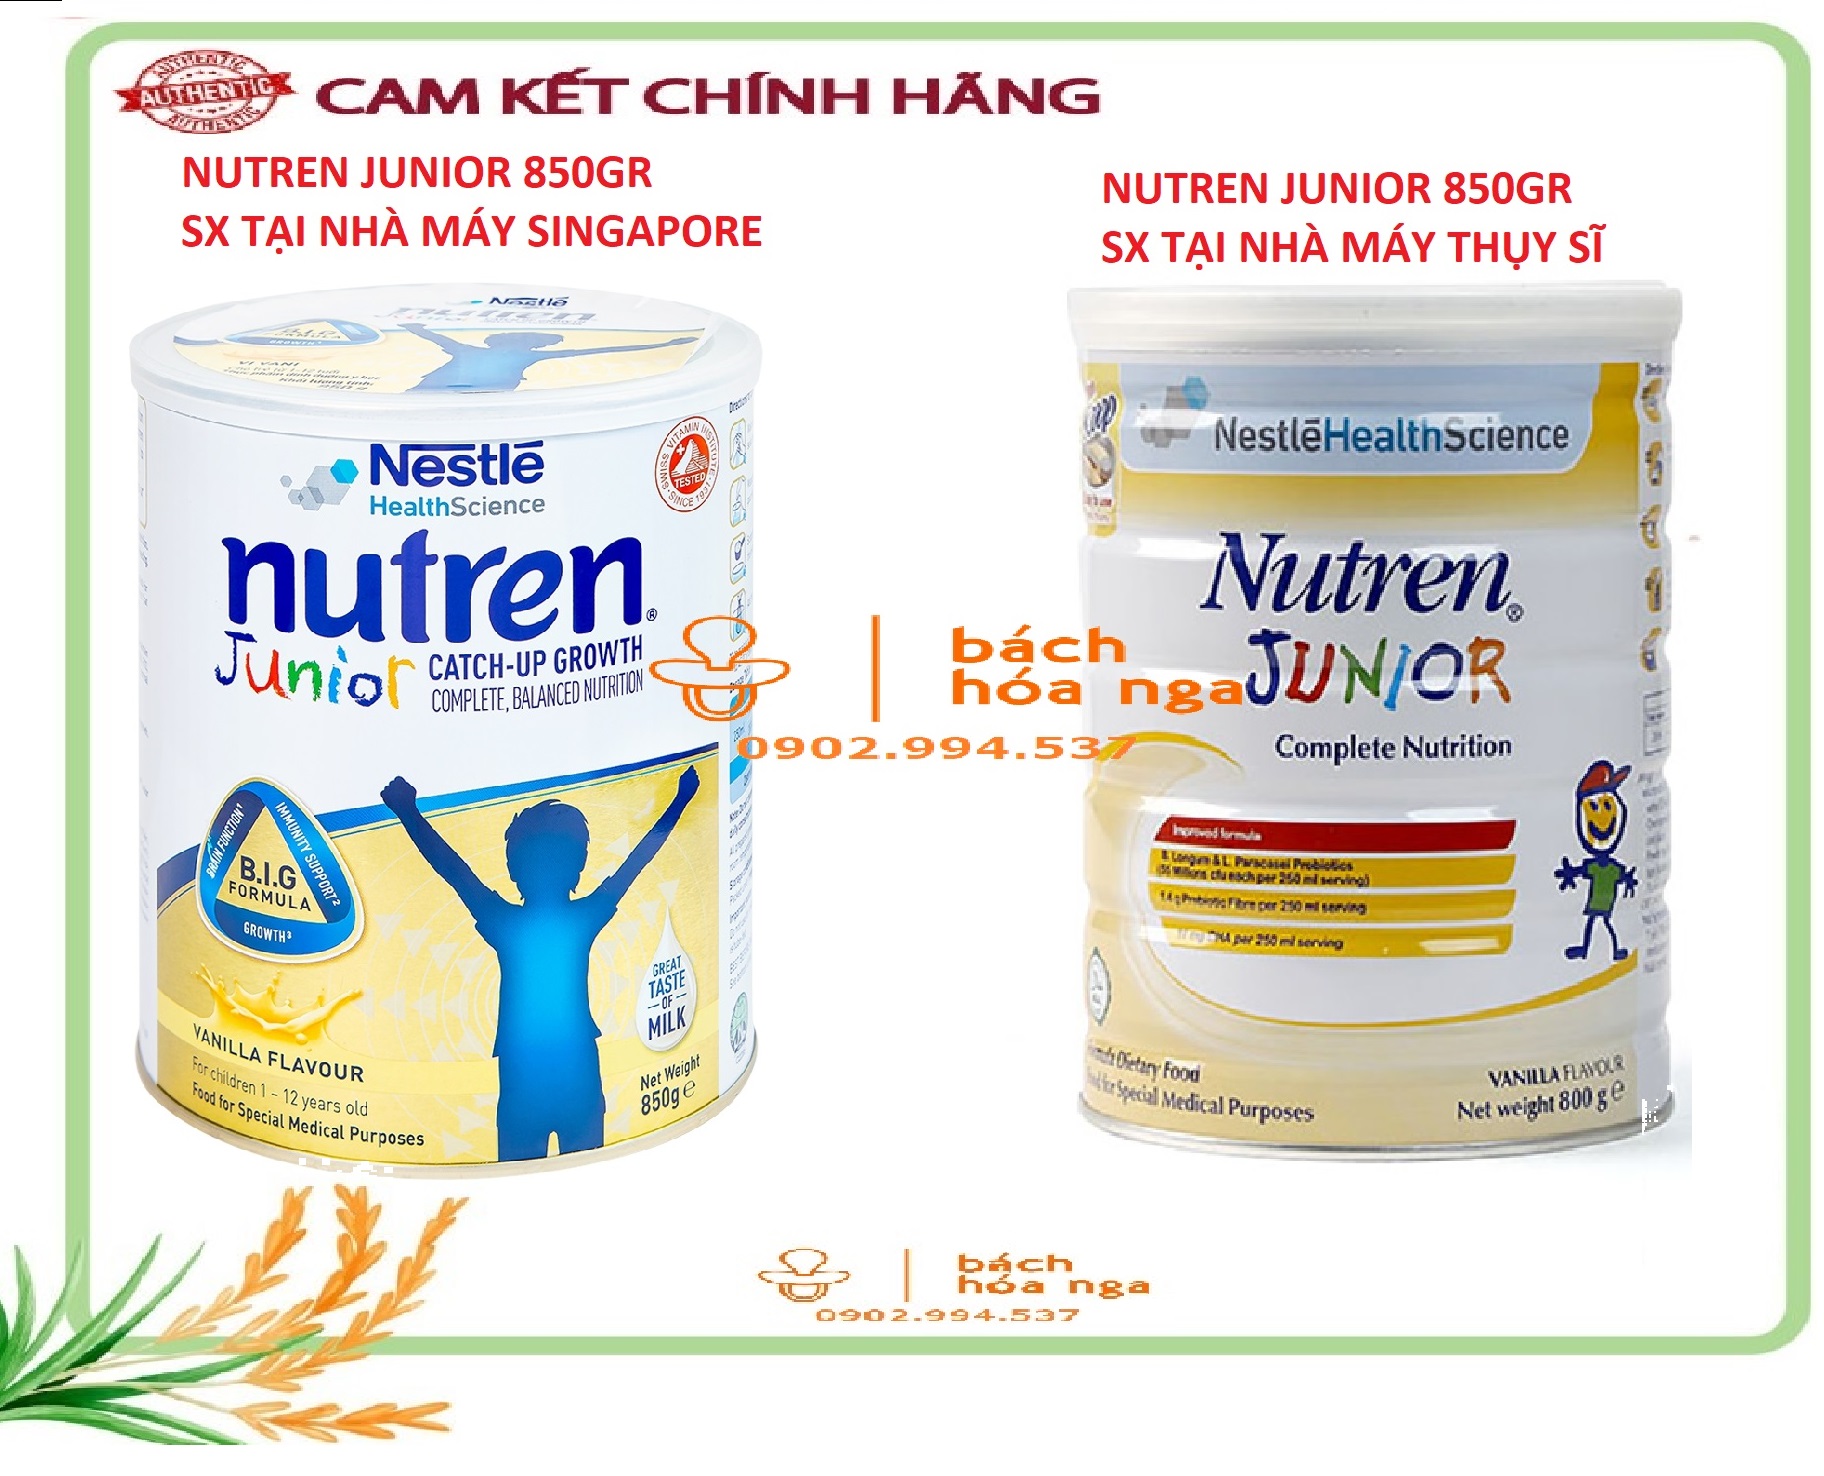 Nutren junior milk powder for children 1 10 years old 850gr and 800g box